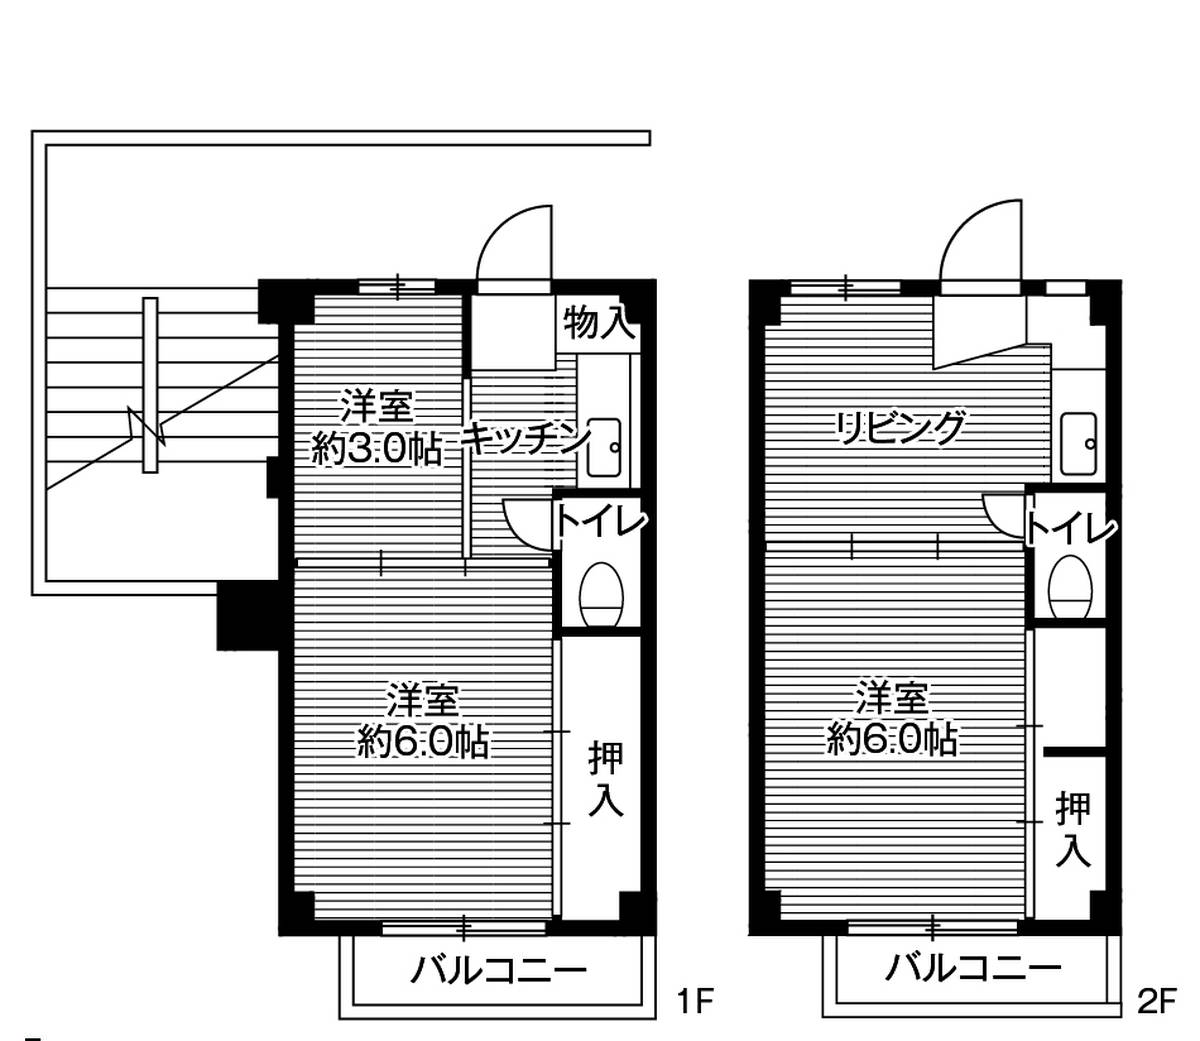 3DK floorplan of Village House Futawa in Funabashi-shi